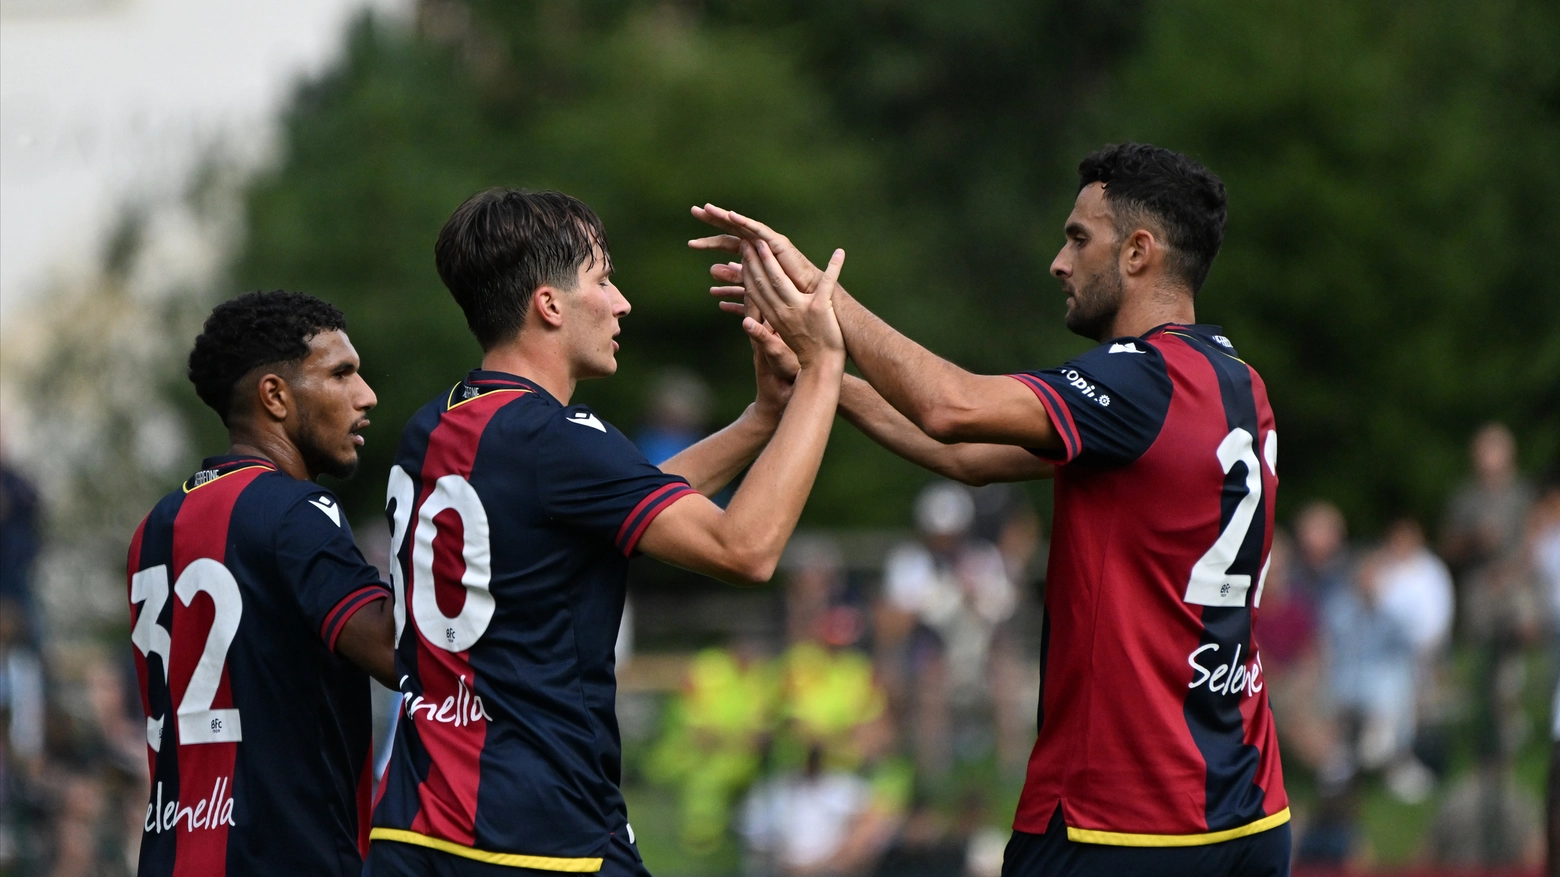 Buona la prima in ritiro per i rossoblù: la squadra di Italiano vince 2-0 con i gol di Byar e Fabbian, entrambi arrivati nel primo tempo. Esordio per Dallinga